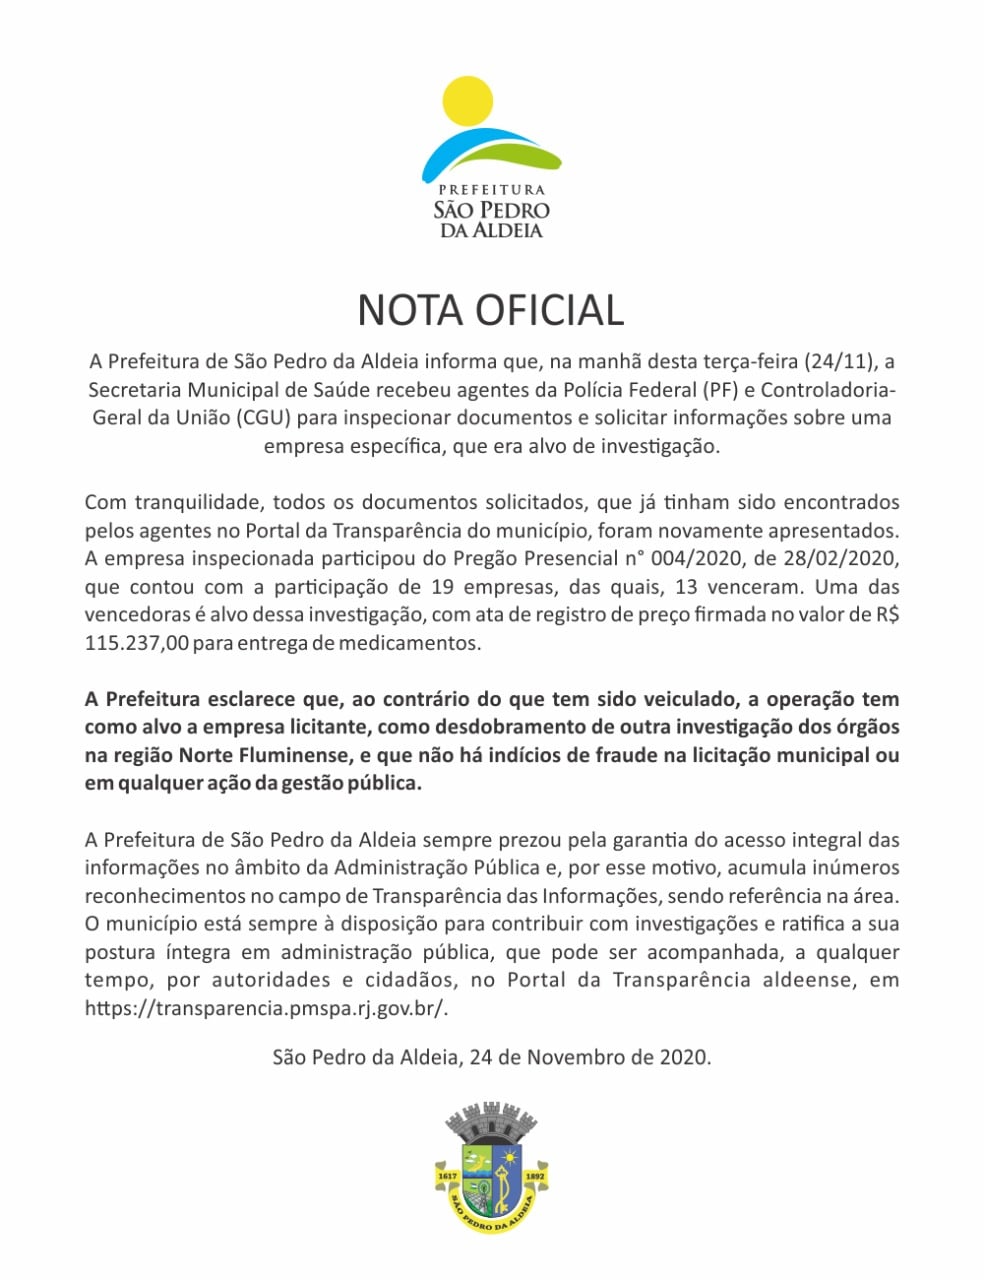 Prefeitura de São Pedro da Aldeia divulga Nota Oficial sobre Operação da PF e CGU